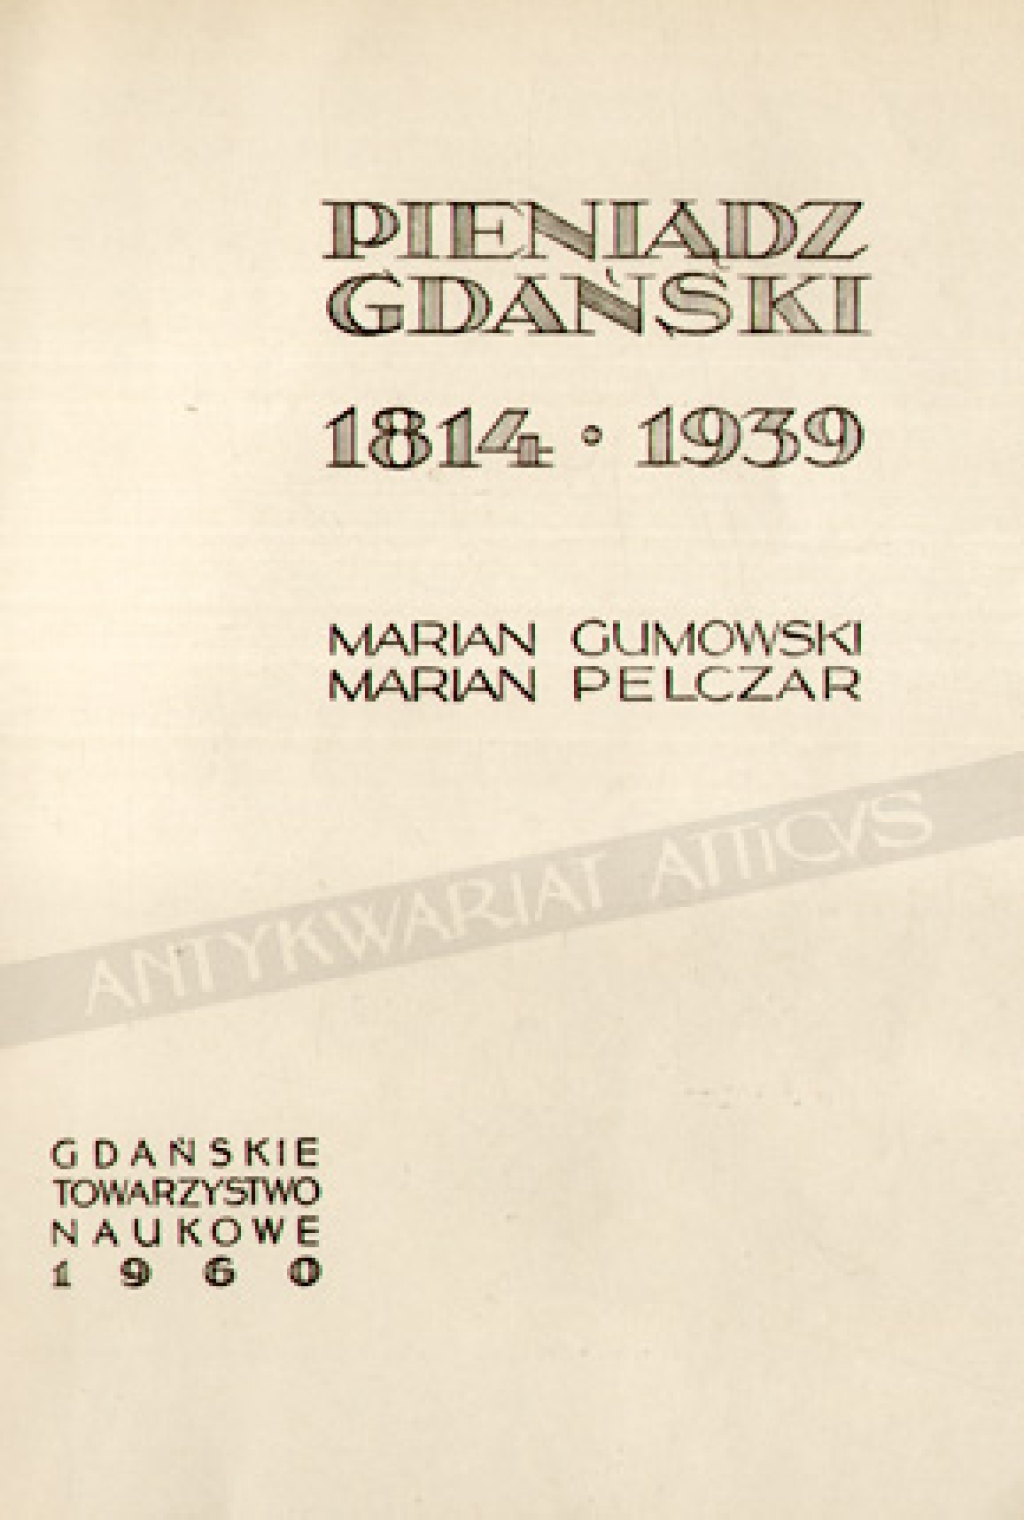 Pieniądz gdański 1814-1939